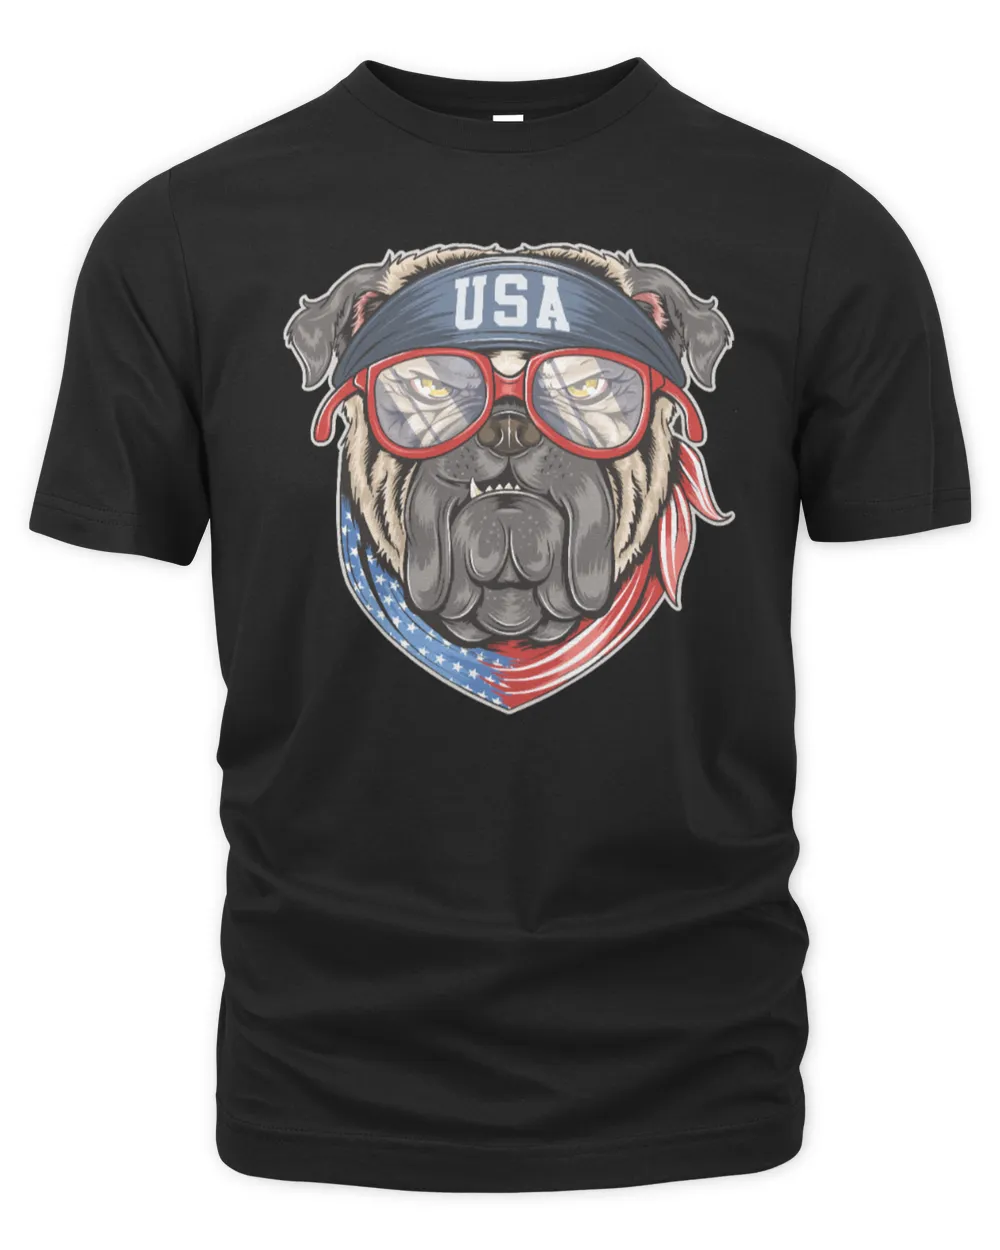 Dog American Bulldog USA Coll Design 356 paws